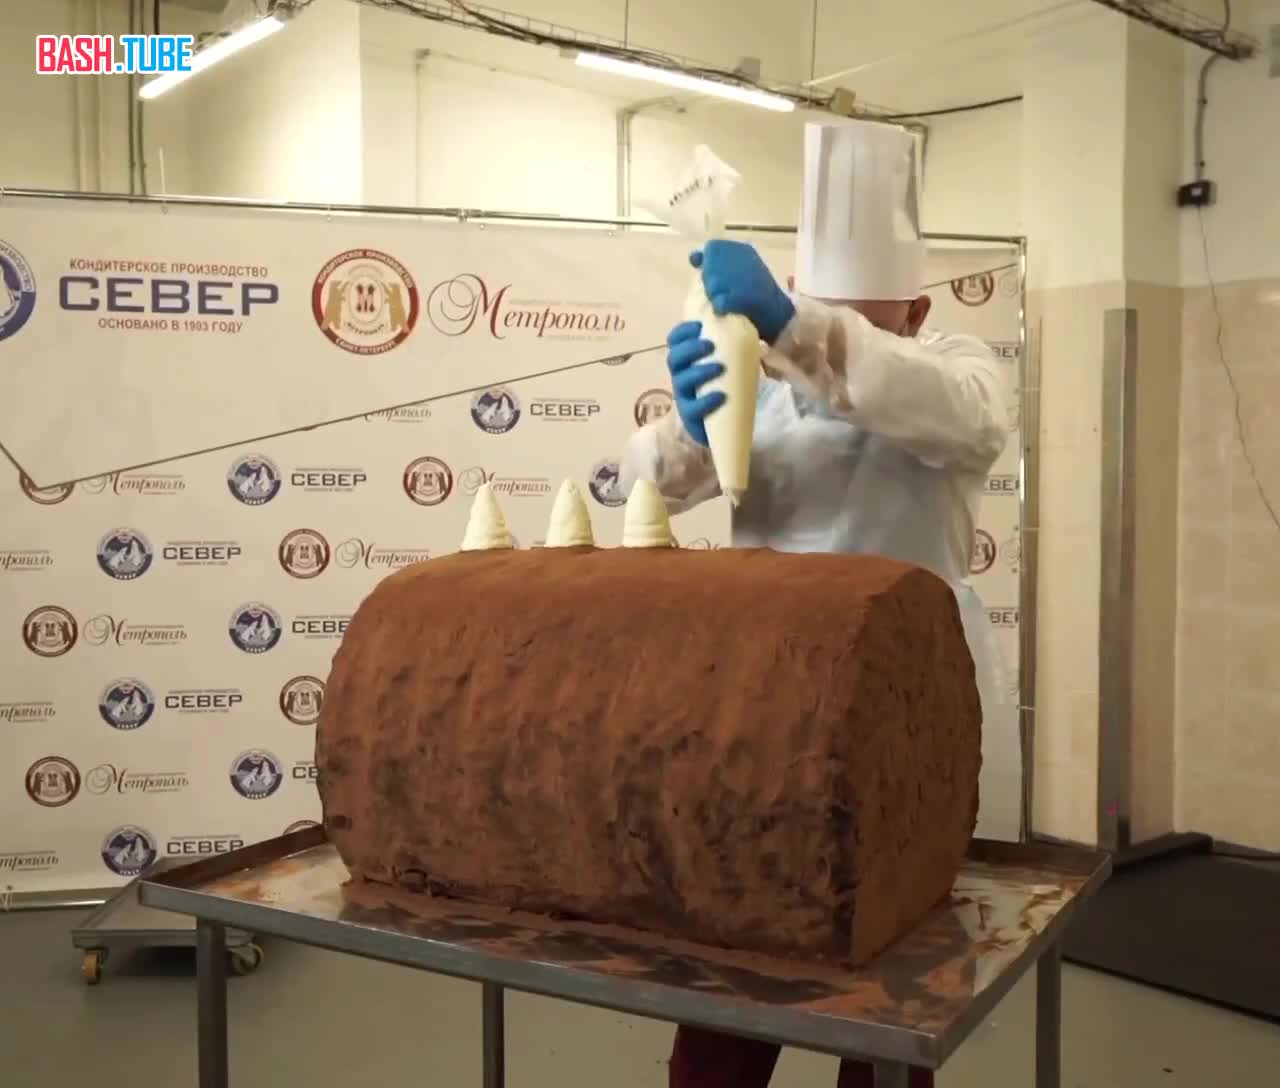 ⁣ Гигантское пирожное «Картошка» весом 123кг приготовили в Санкт-Петербурге, чтобы попасть в Книгу рекордов Гиннесса